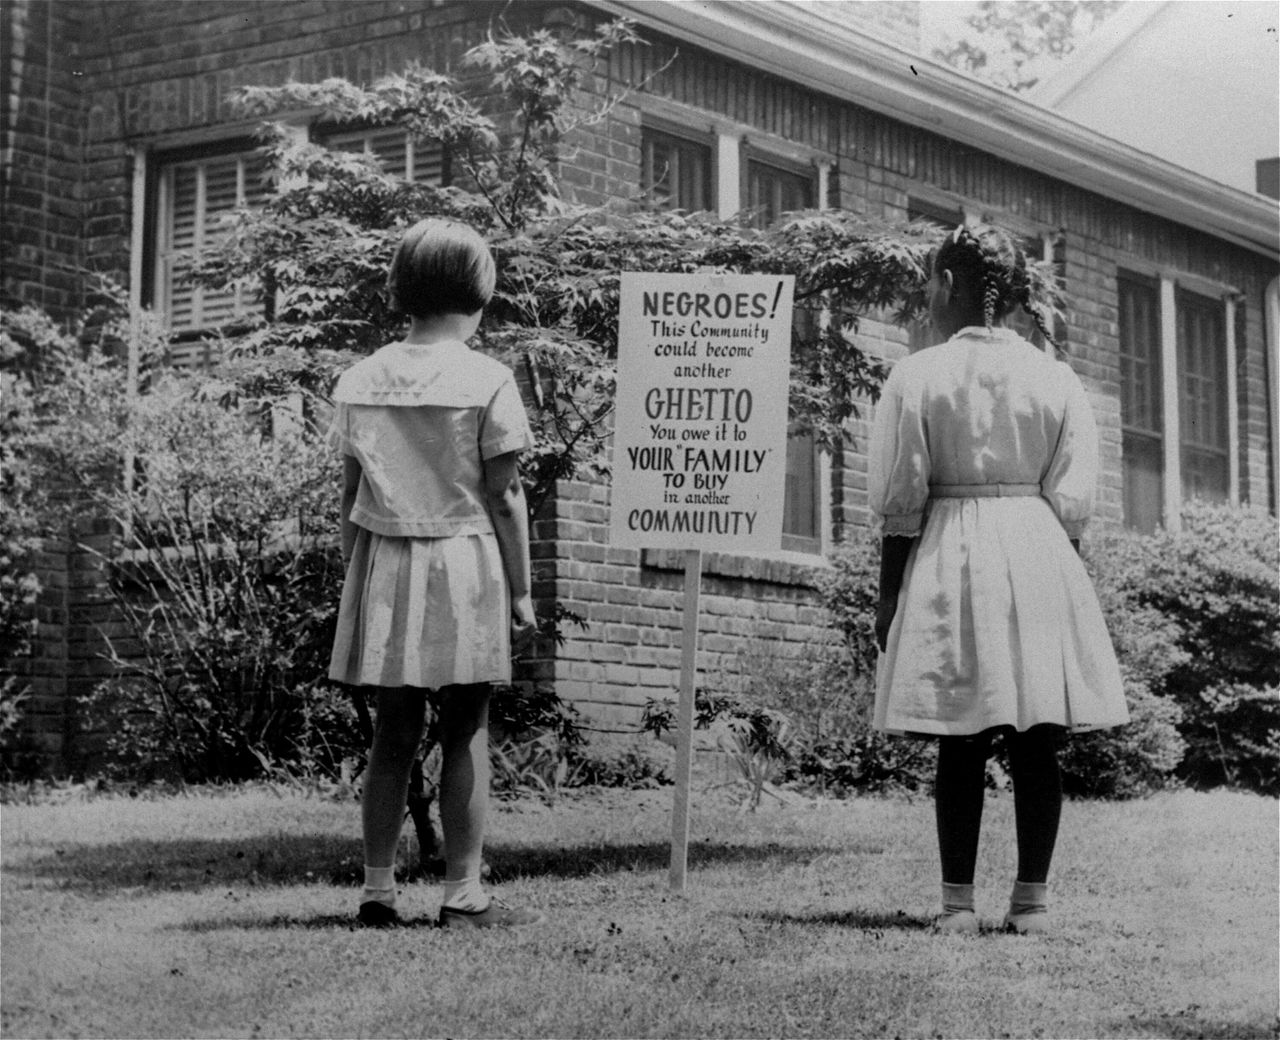 Απρίλιος 1962 - Μια αφροαμερικανή και ένα λευκό κορίτσι κοιτάζουν μια πινακίδα στο Long Island η οποία γράφει: «Νέγροι! Αυτή η κοινότητα μπορεί να εξελιχθεί σε ένα ακόμη γκέτο. Το οφείλεις στην οικογένειά σου να αγοράσεις σε άλλη κοινότητα». Επρόκειτο για μια προσπάθεια να αποτρέψουν τους αφροαμερικανούς από το να υπερβούν αριθμητικά τους λευκούς σε περιοχές όπου οι πόλεις ήταν μικτές.